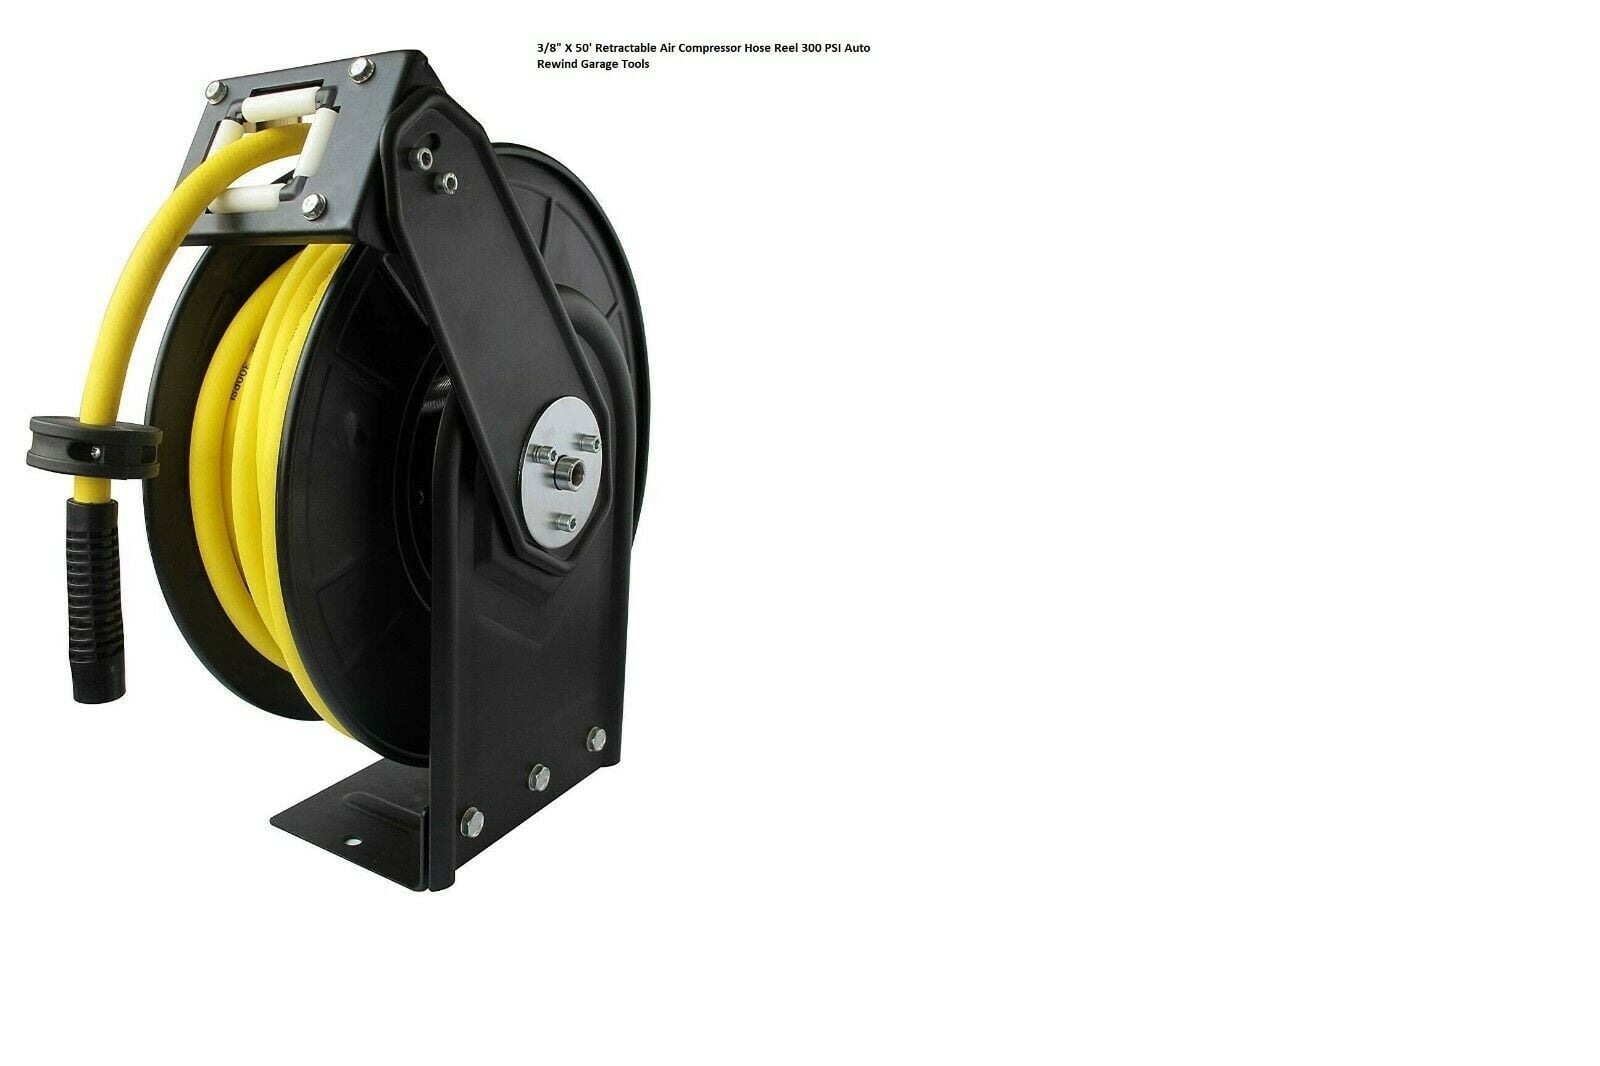 3/8" X 50' Retractable Air Compressor Hose Reel 300 PSI Auto Rewind Garage Tools 